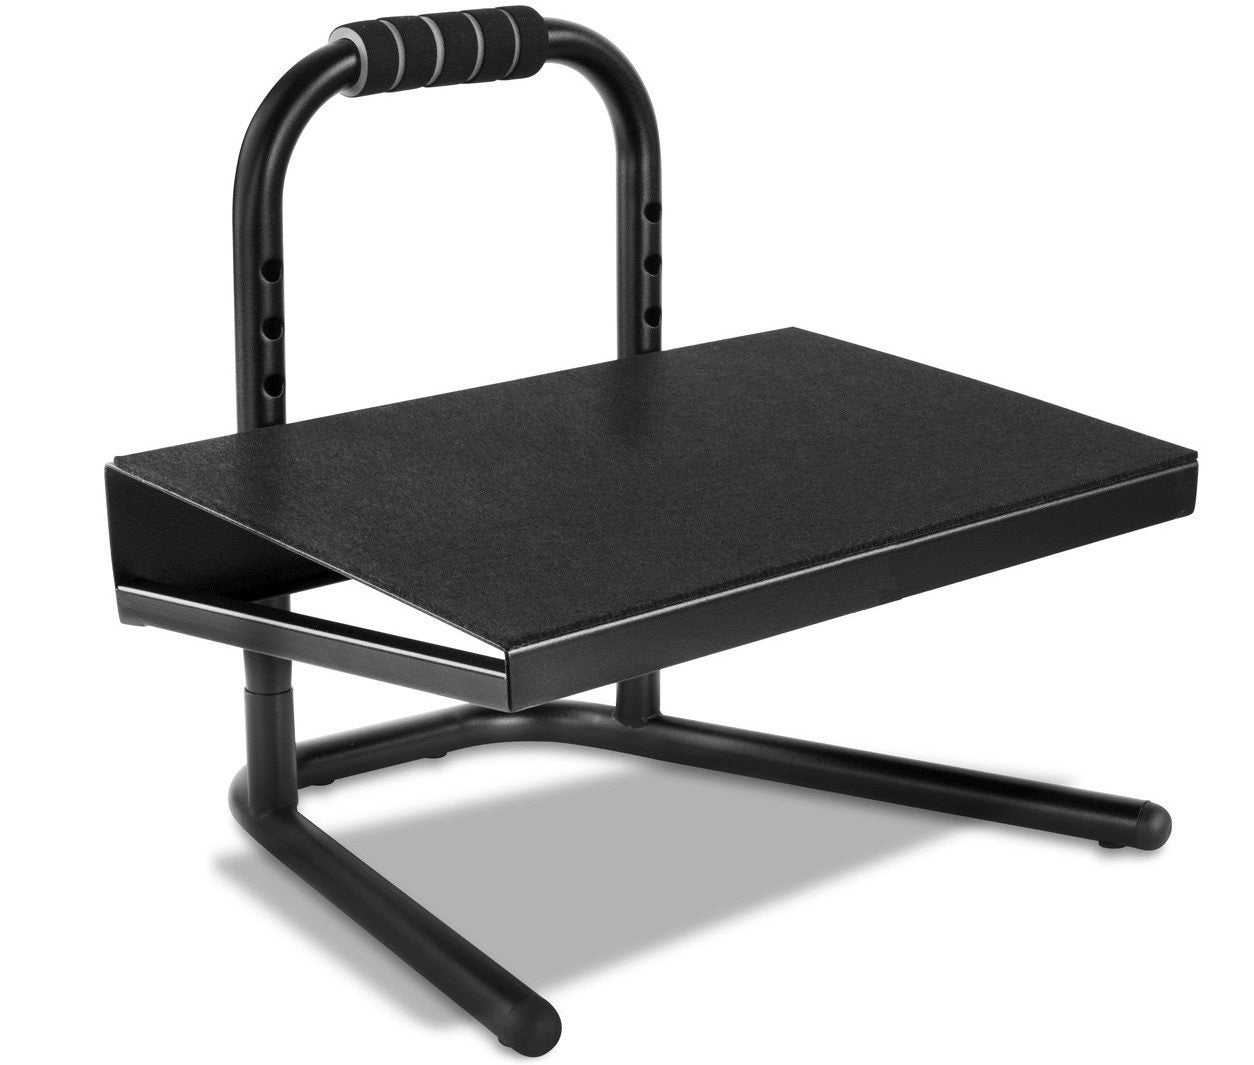 Large HD Adjustable Footrest for Desk or Bench